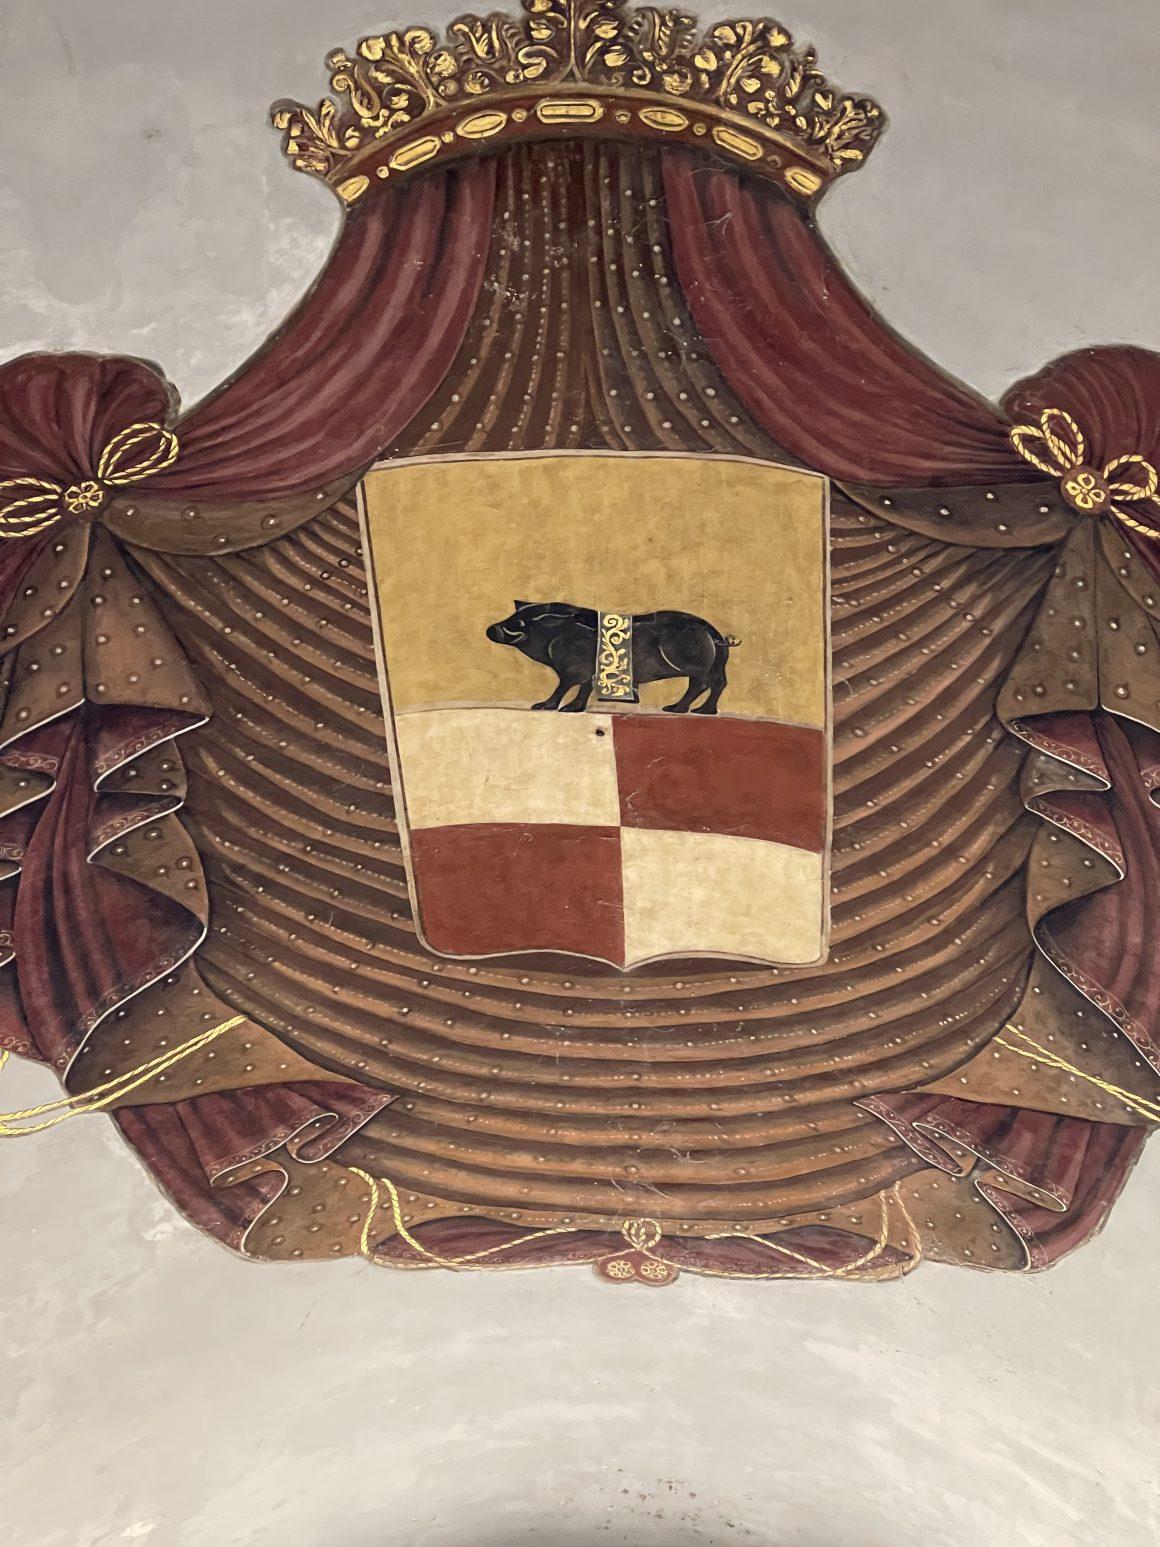 Il cinghiale calidonio, la vera storia del simbolo di Benevento